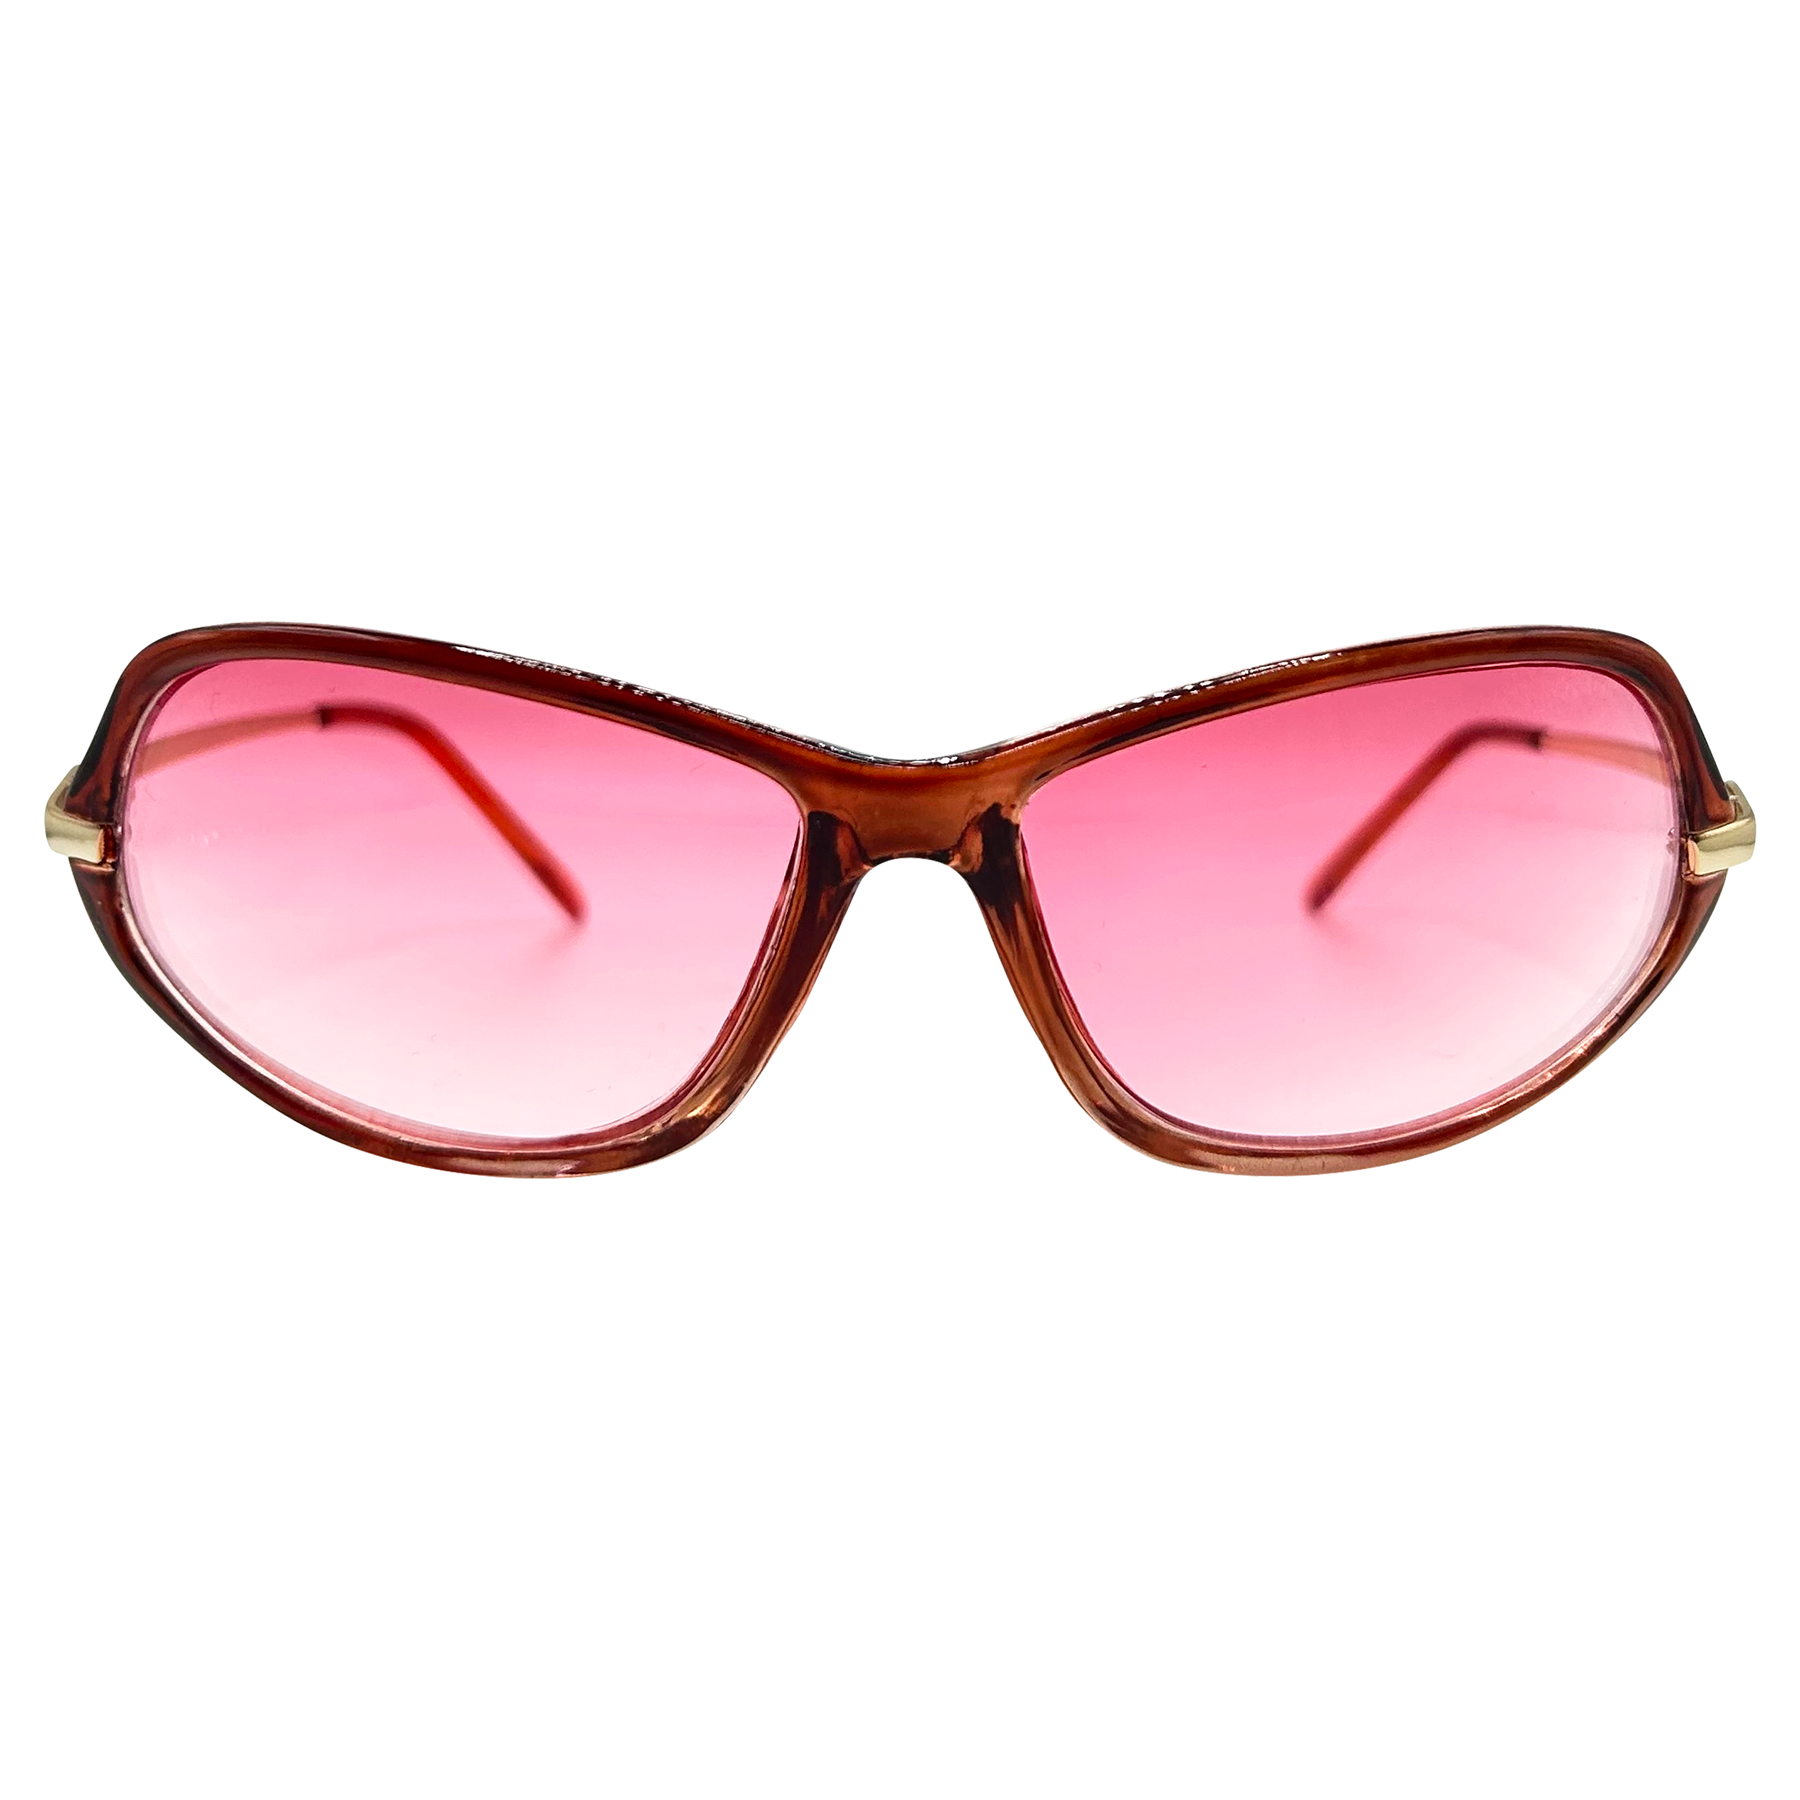 GINGER 70s Sunglasses